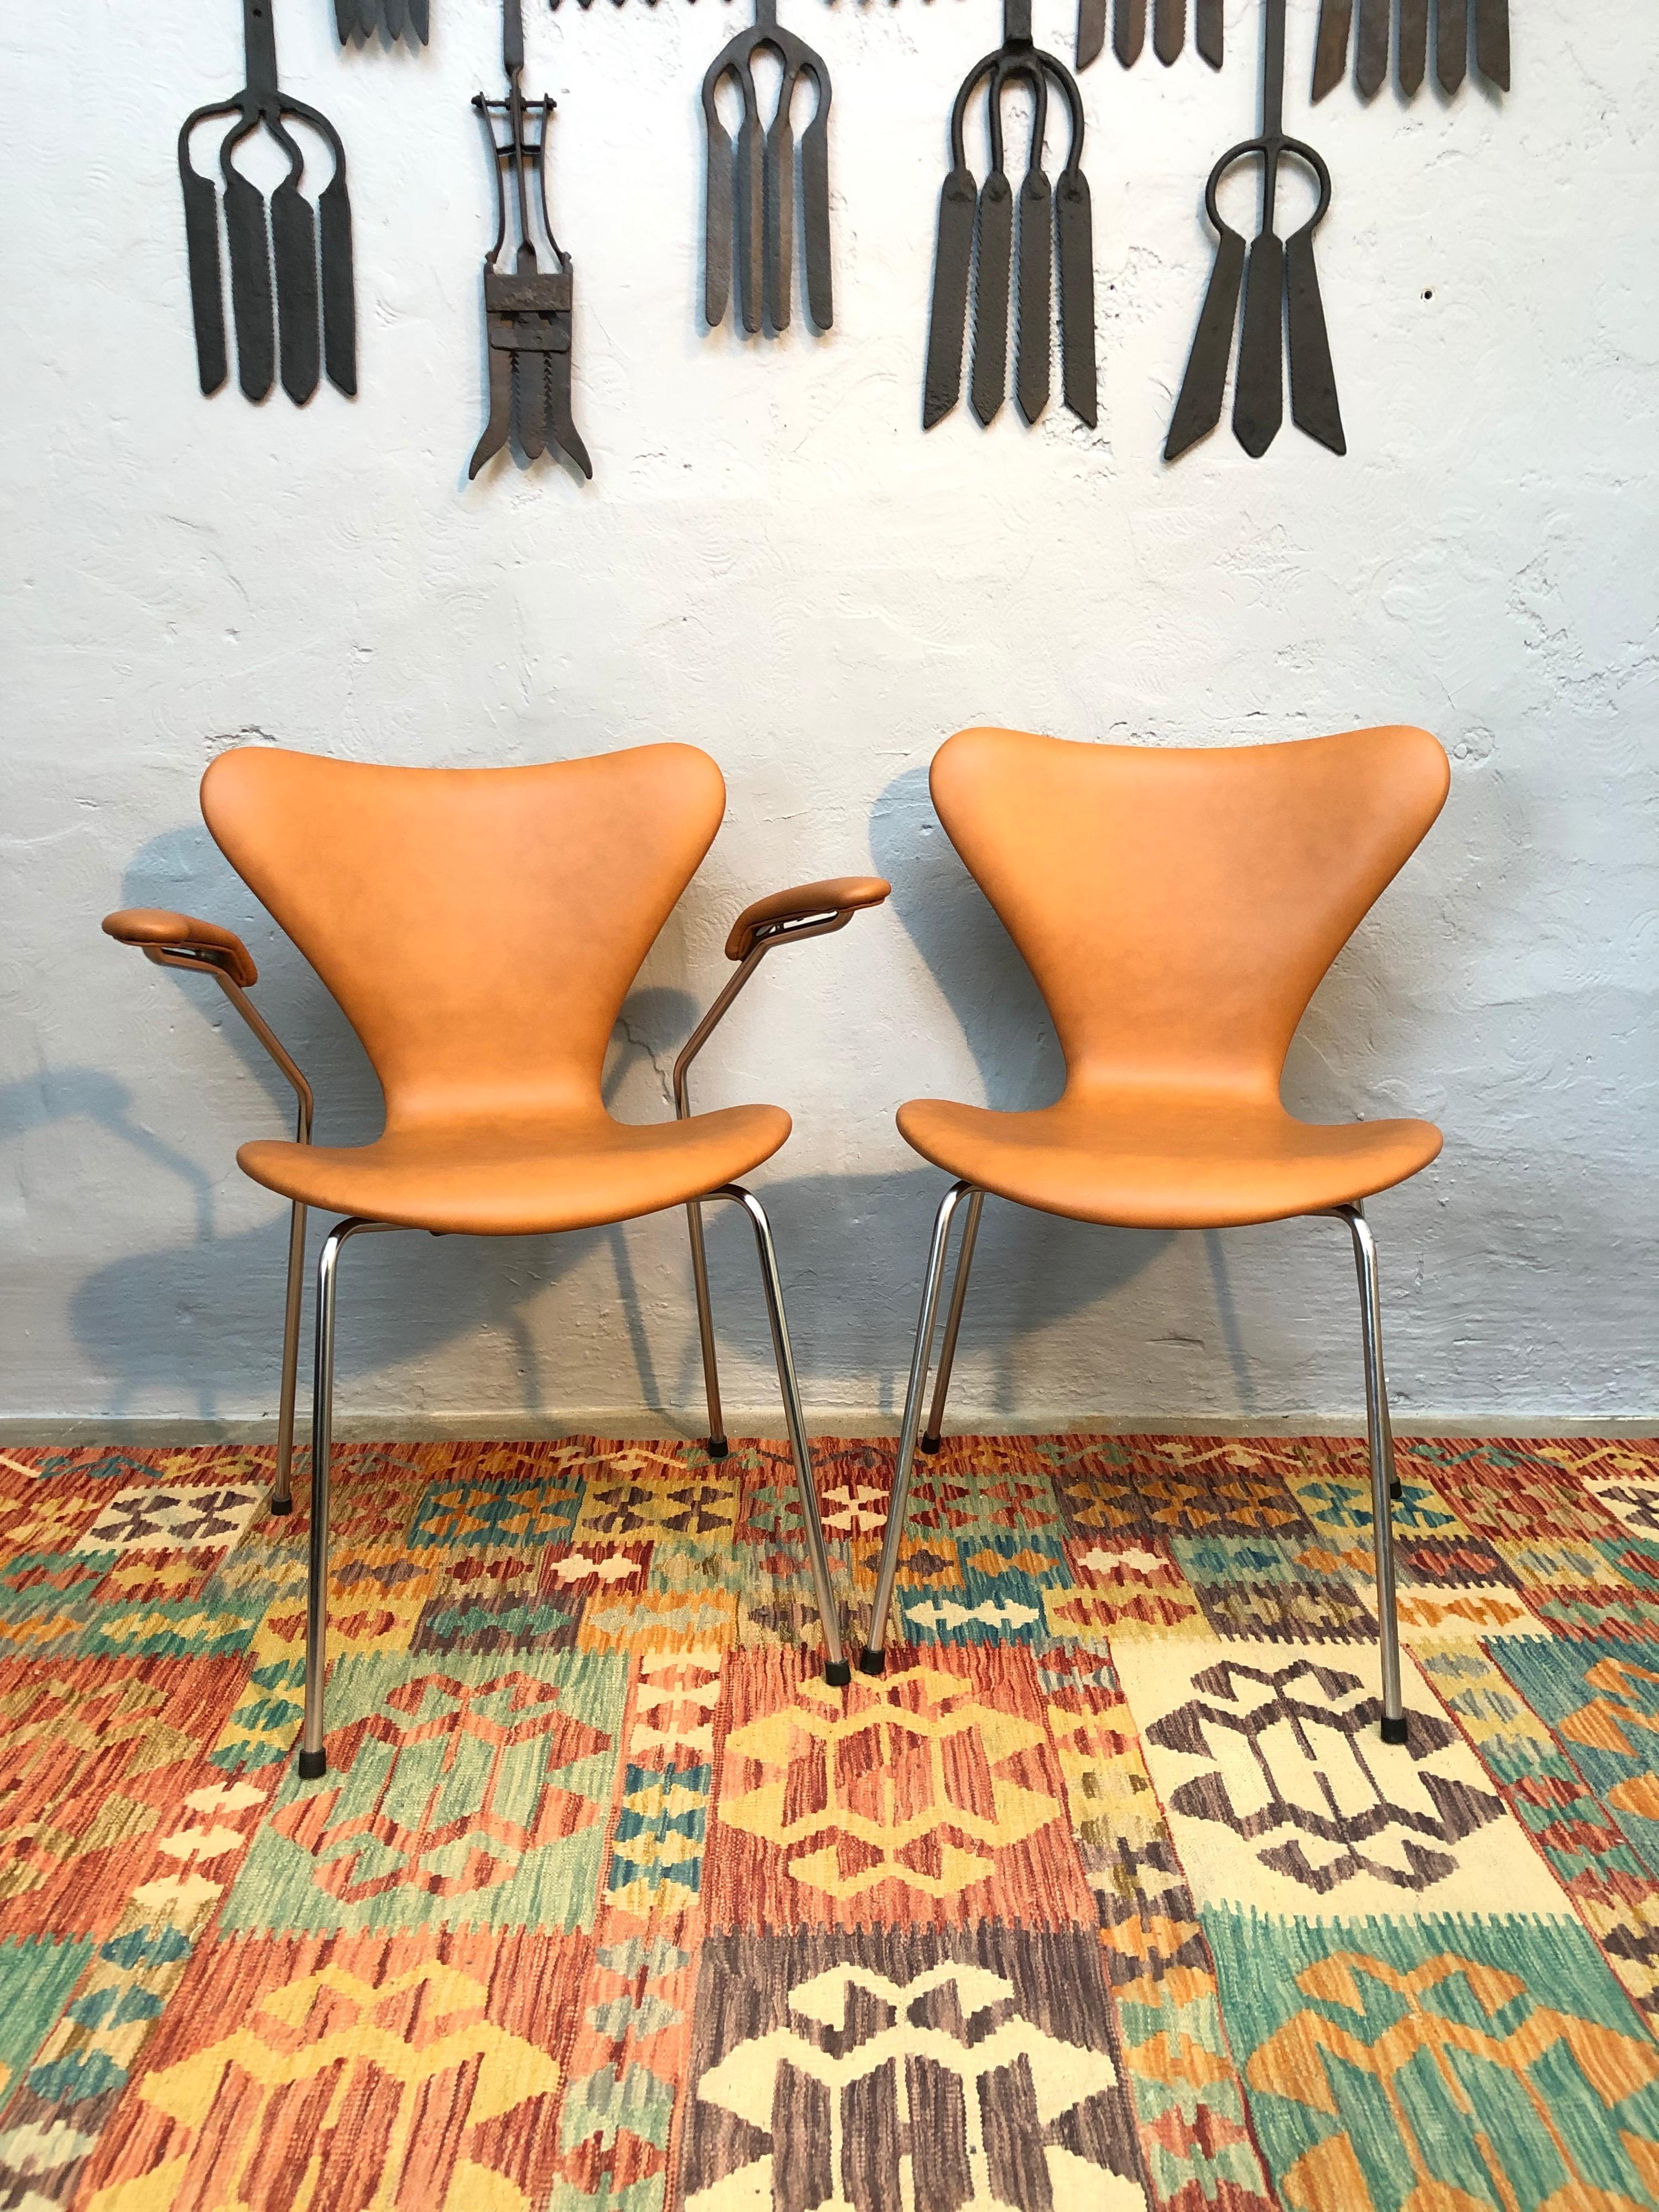 Un ensemble de 4 chaises iconiques fabriquées au Danemark par Arne Jacobsen pour Fritz Hansen. 
Dans cet ensemble de 4, il y a 2 modèles 3207 avec accoudoirs et 2 modèles 3107 sans. 
Daté et marqué sur la base 1963/1964. 
Il s'agit d'un ensemble